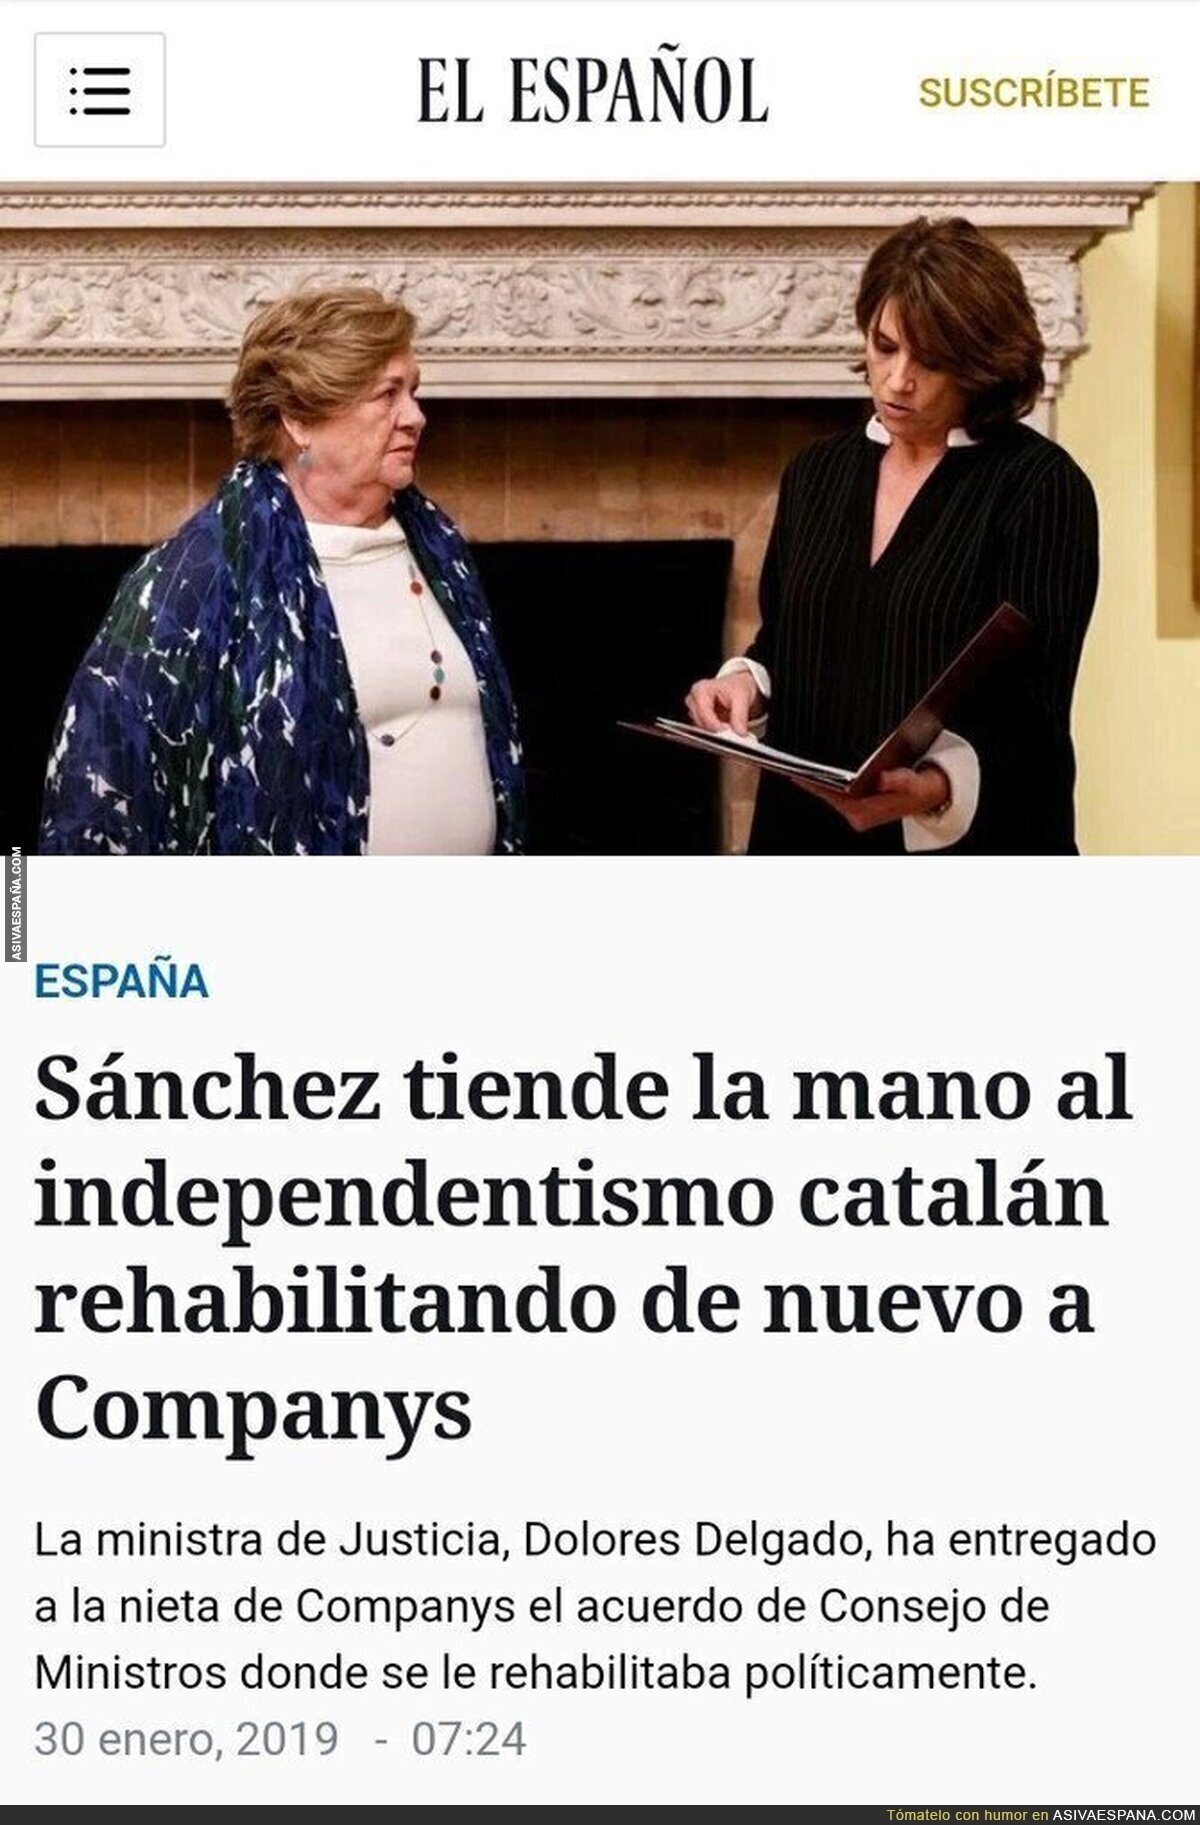 El Gobierno de España homenajea a Companys, a la vez que afirma que no hace concesiones a los separatistas